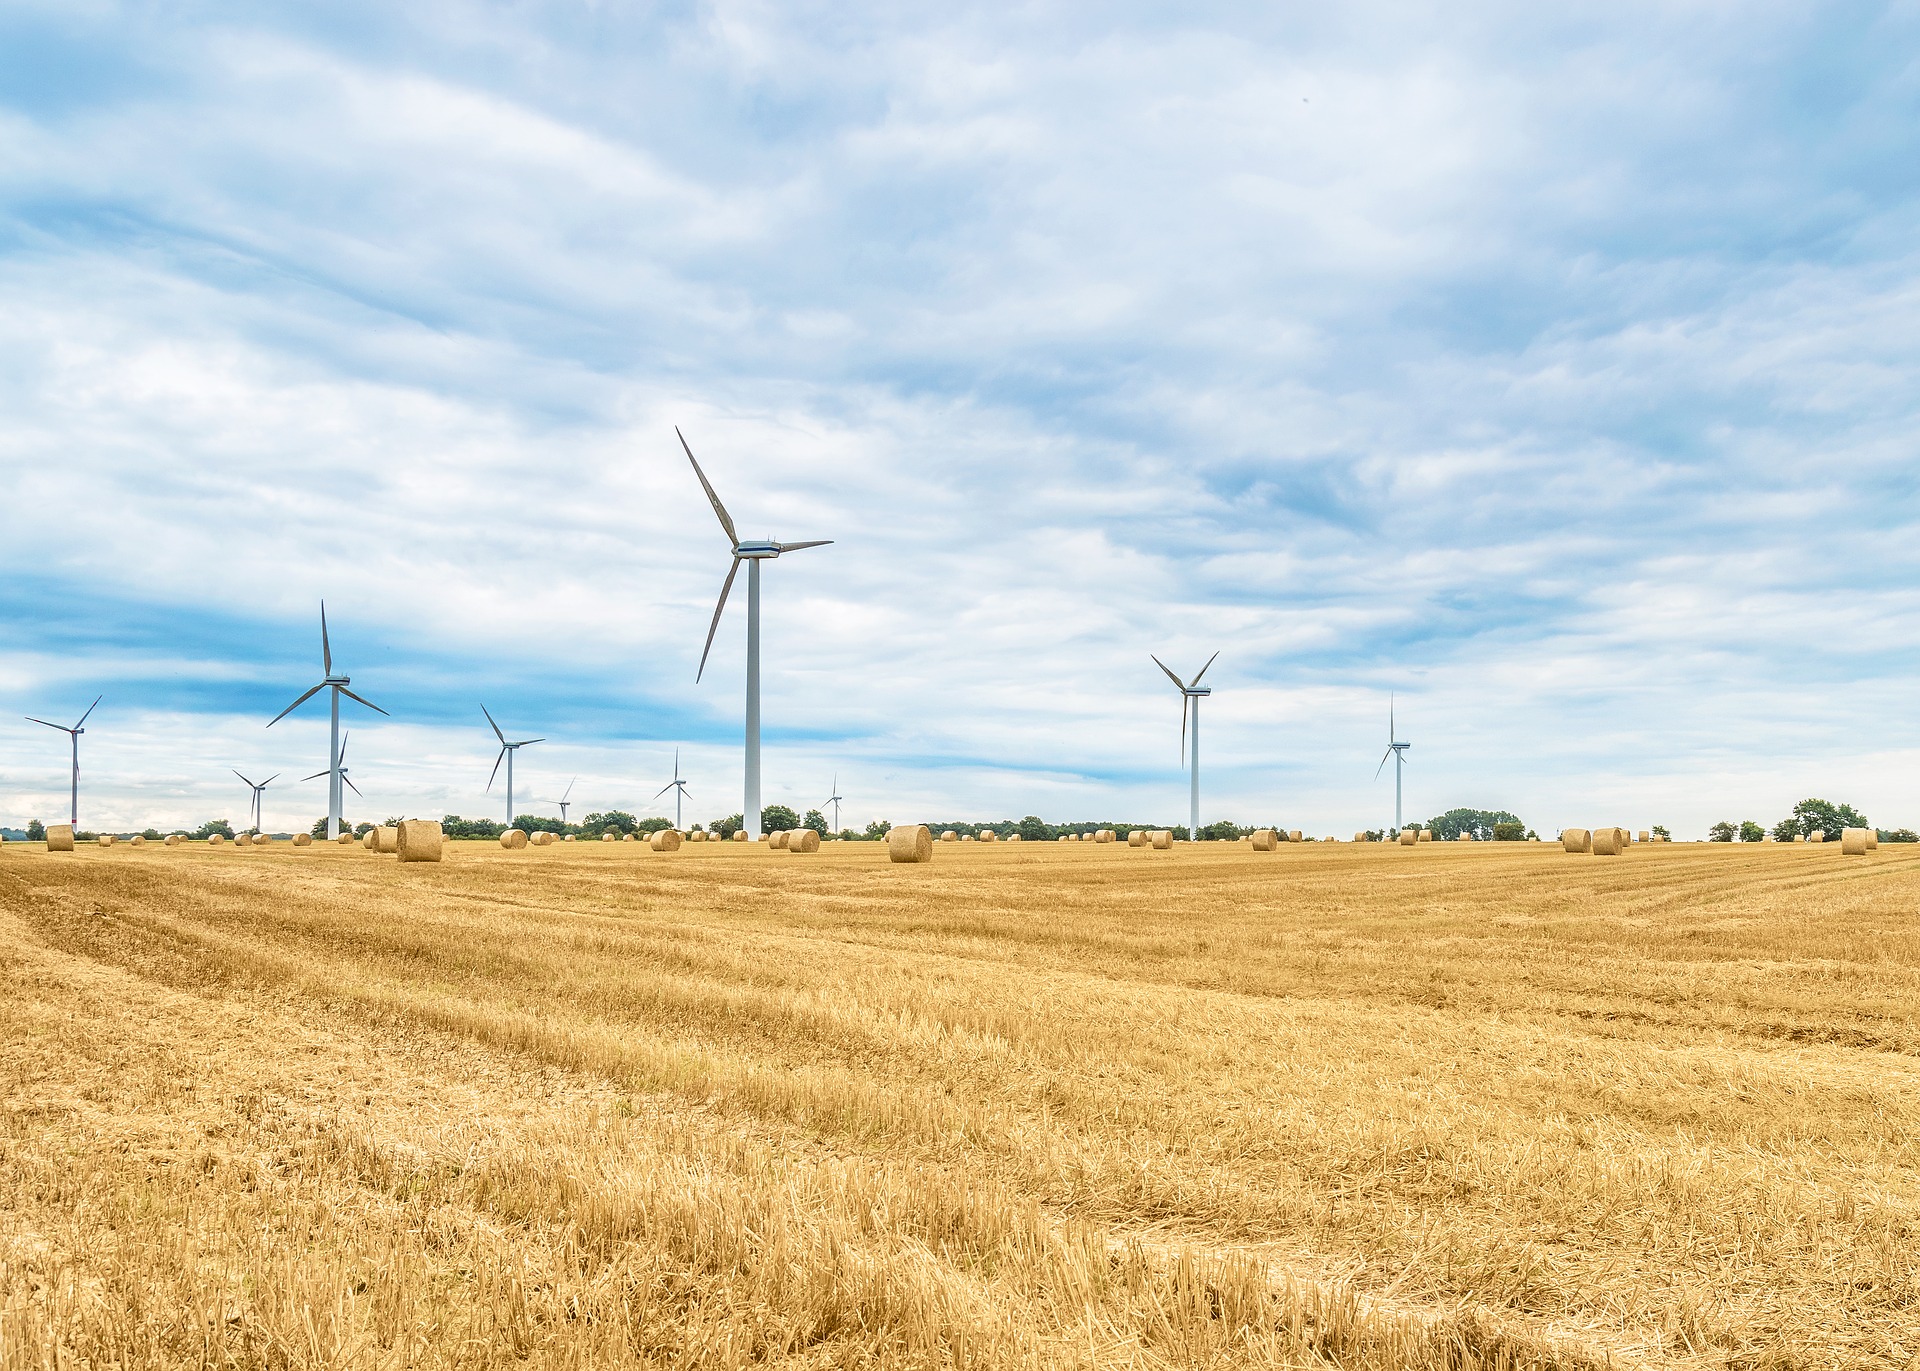 Il existe cinq types d'énergies renouvelables : solaire, éolienne, hydraulique, biomasse et géothermie. Ici, des éoliennes. © kliemphoto, Pixabay